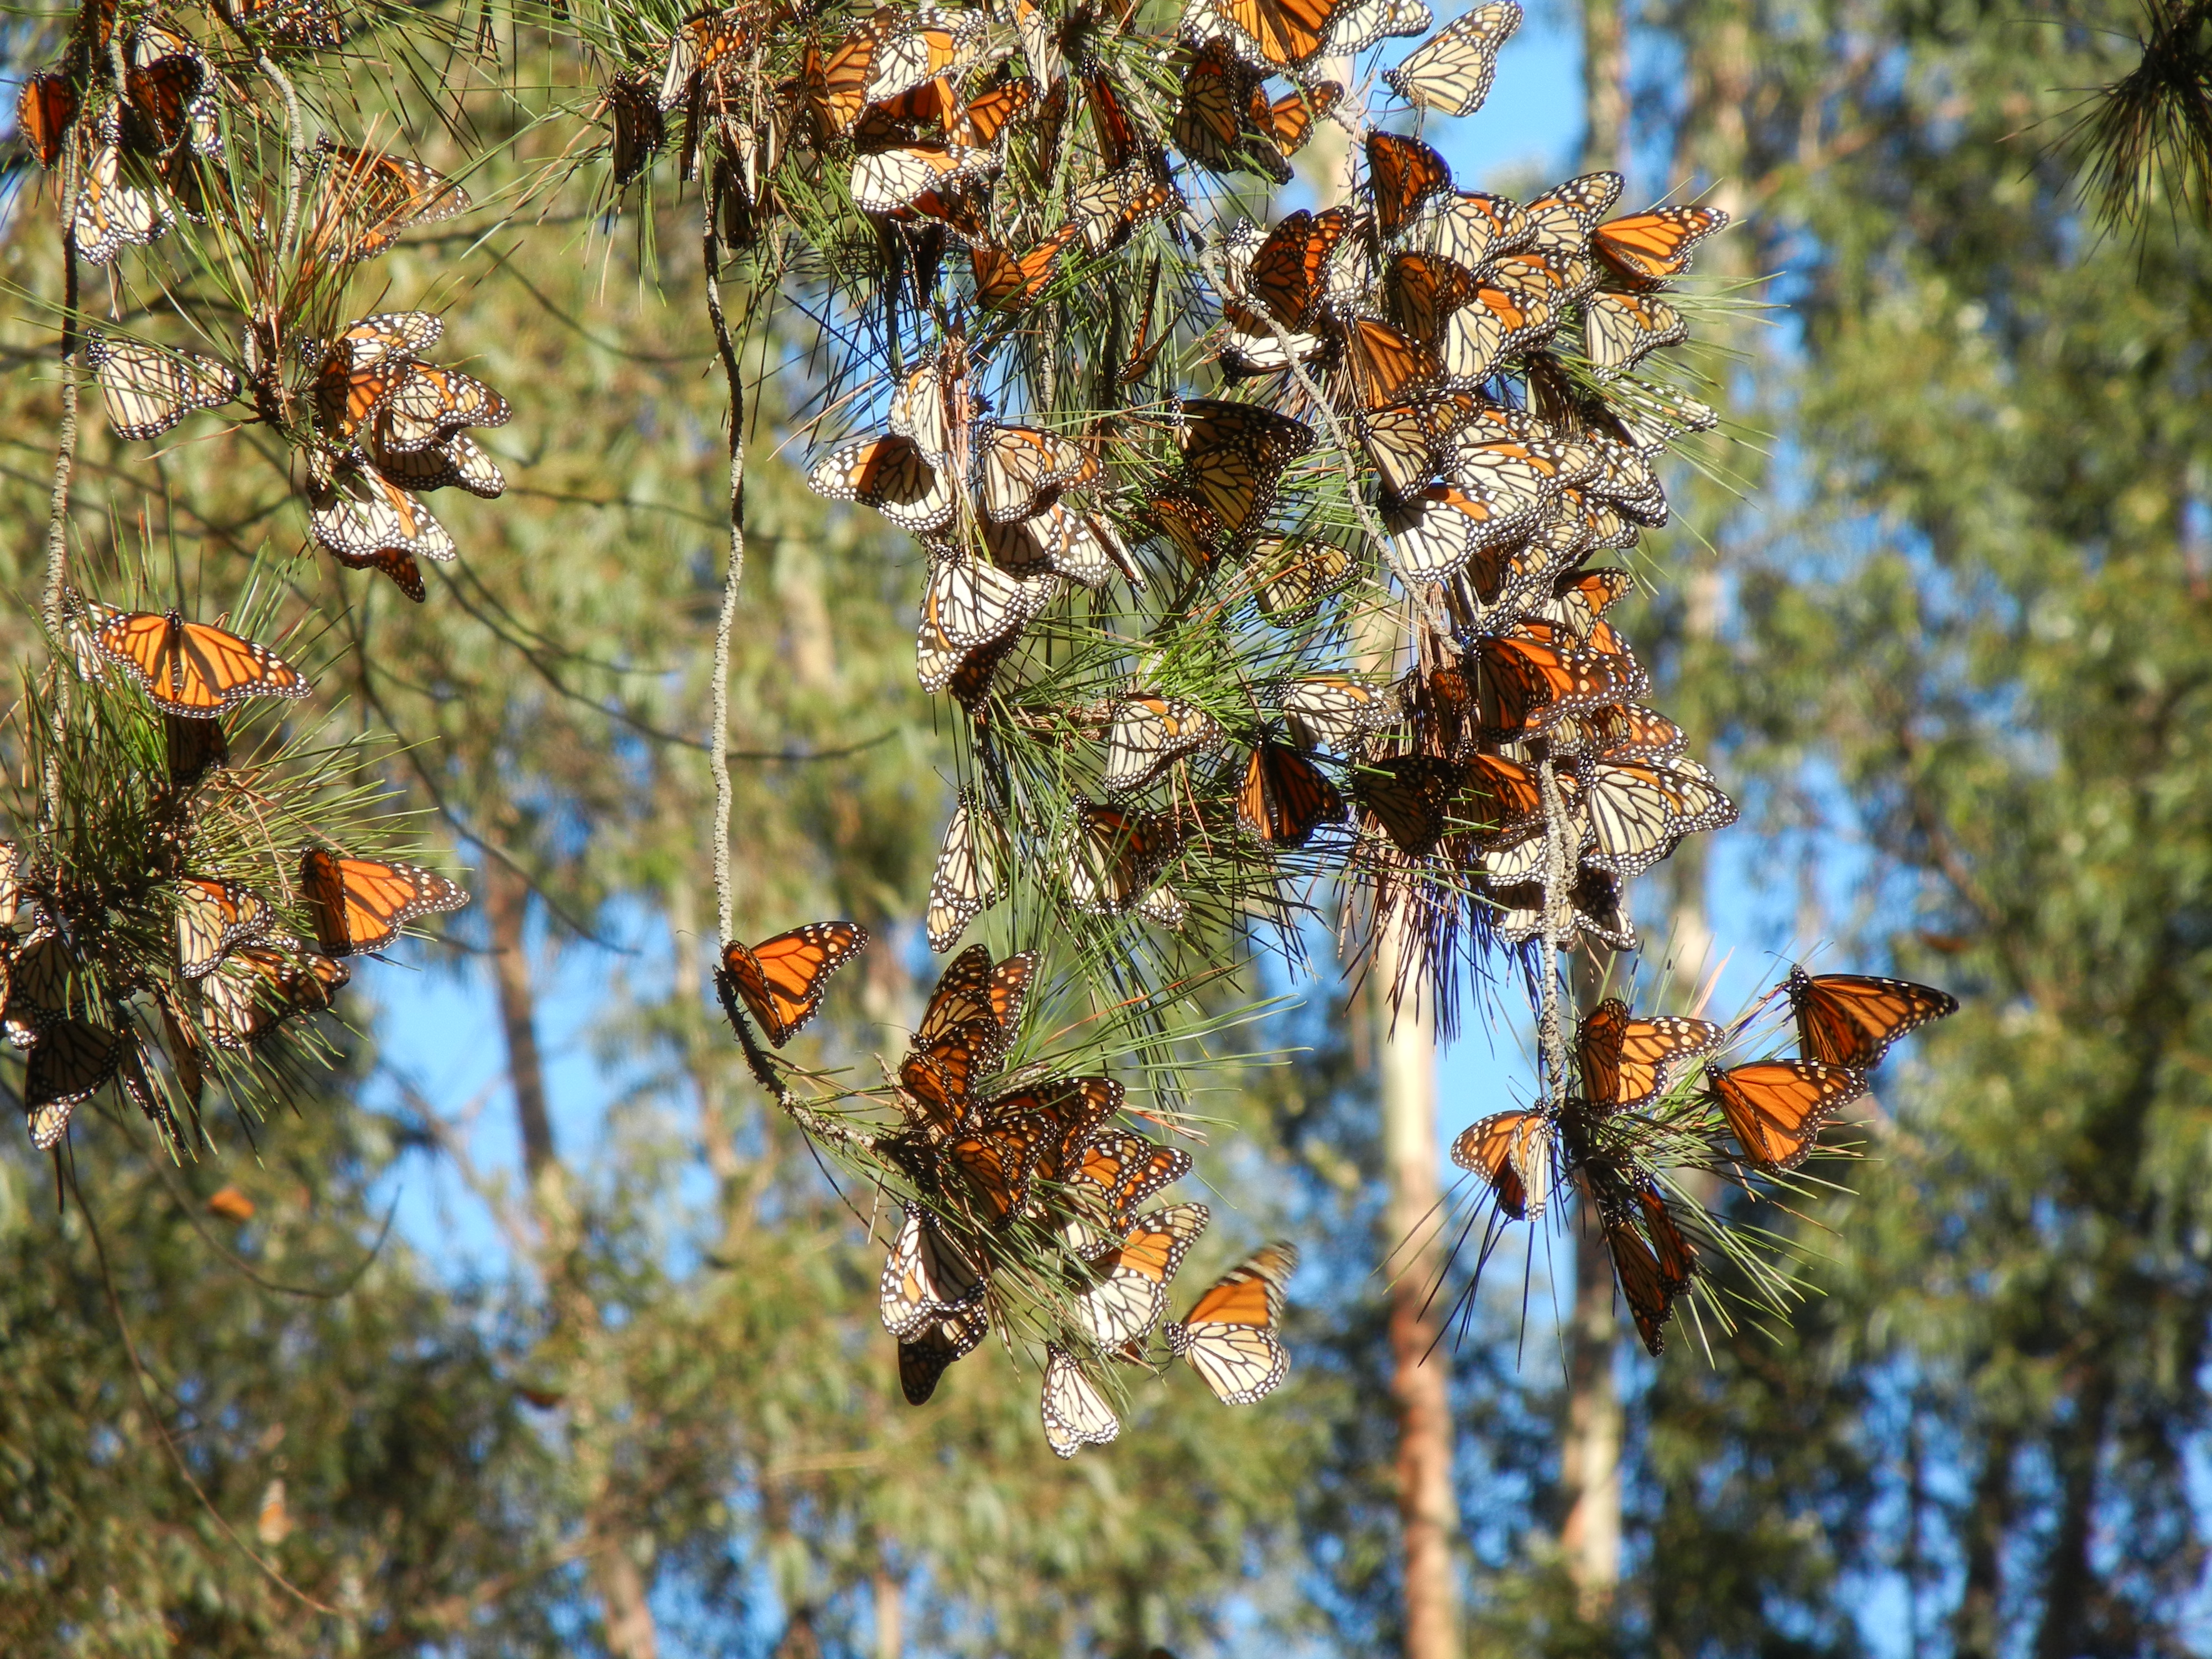 A cluster of orange monarchs brightens a pine branch.